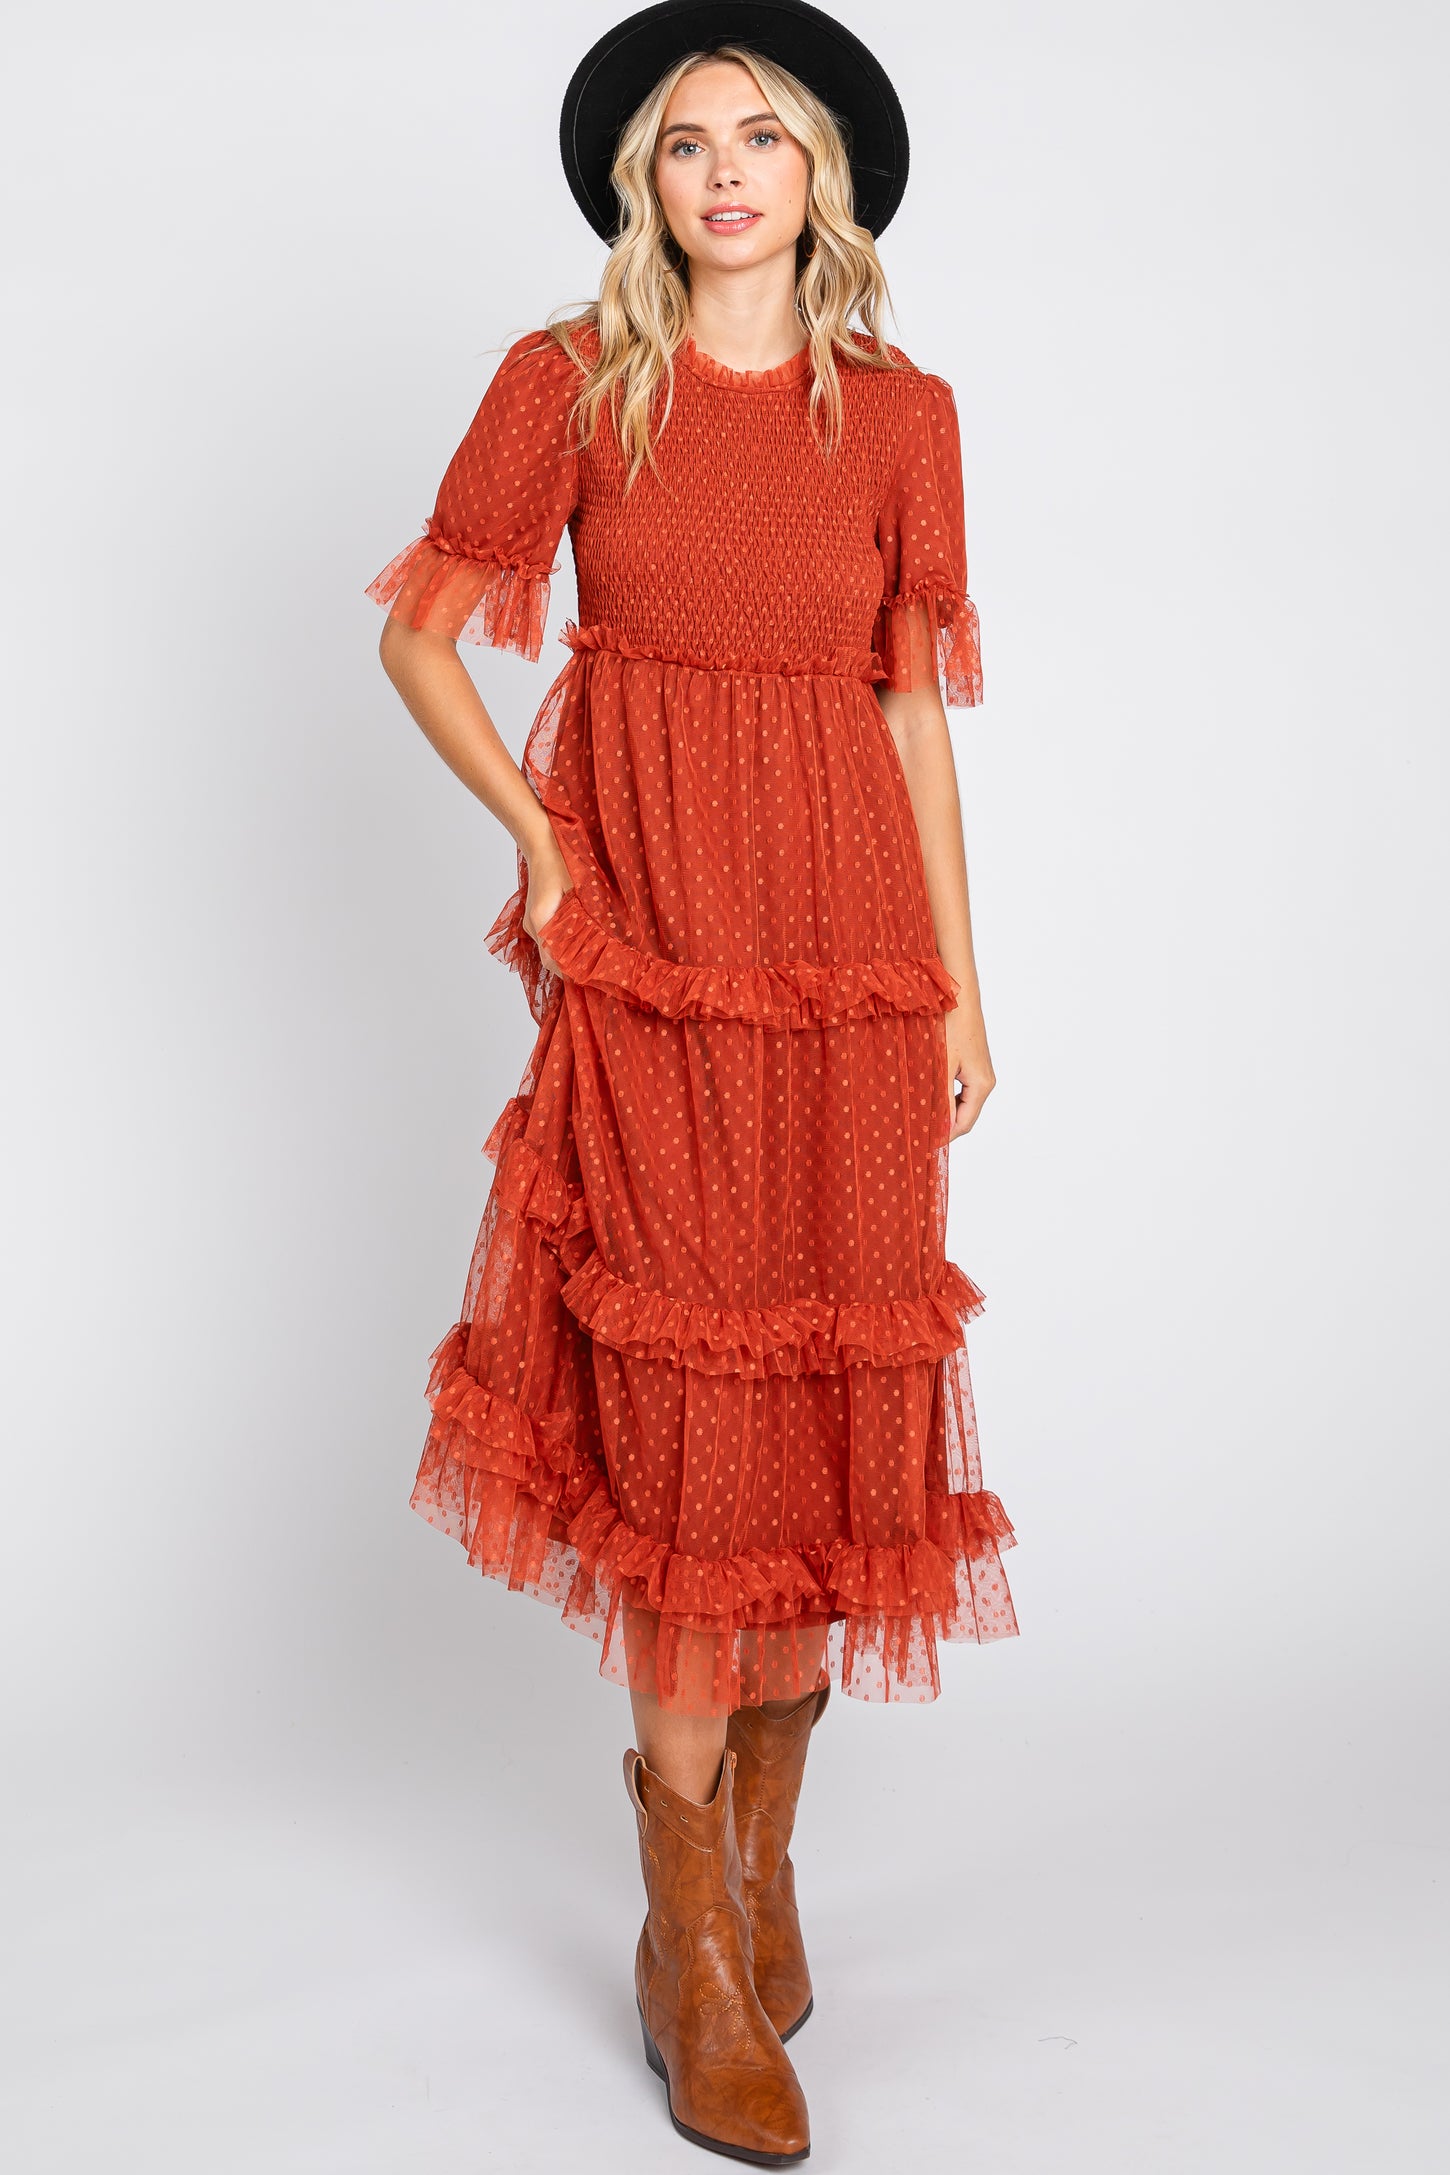 Pretty Rust Orange Dress - Swiss Dot Dress - Lace Midi Dress - Lulus